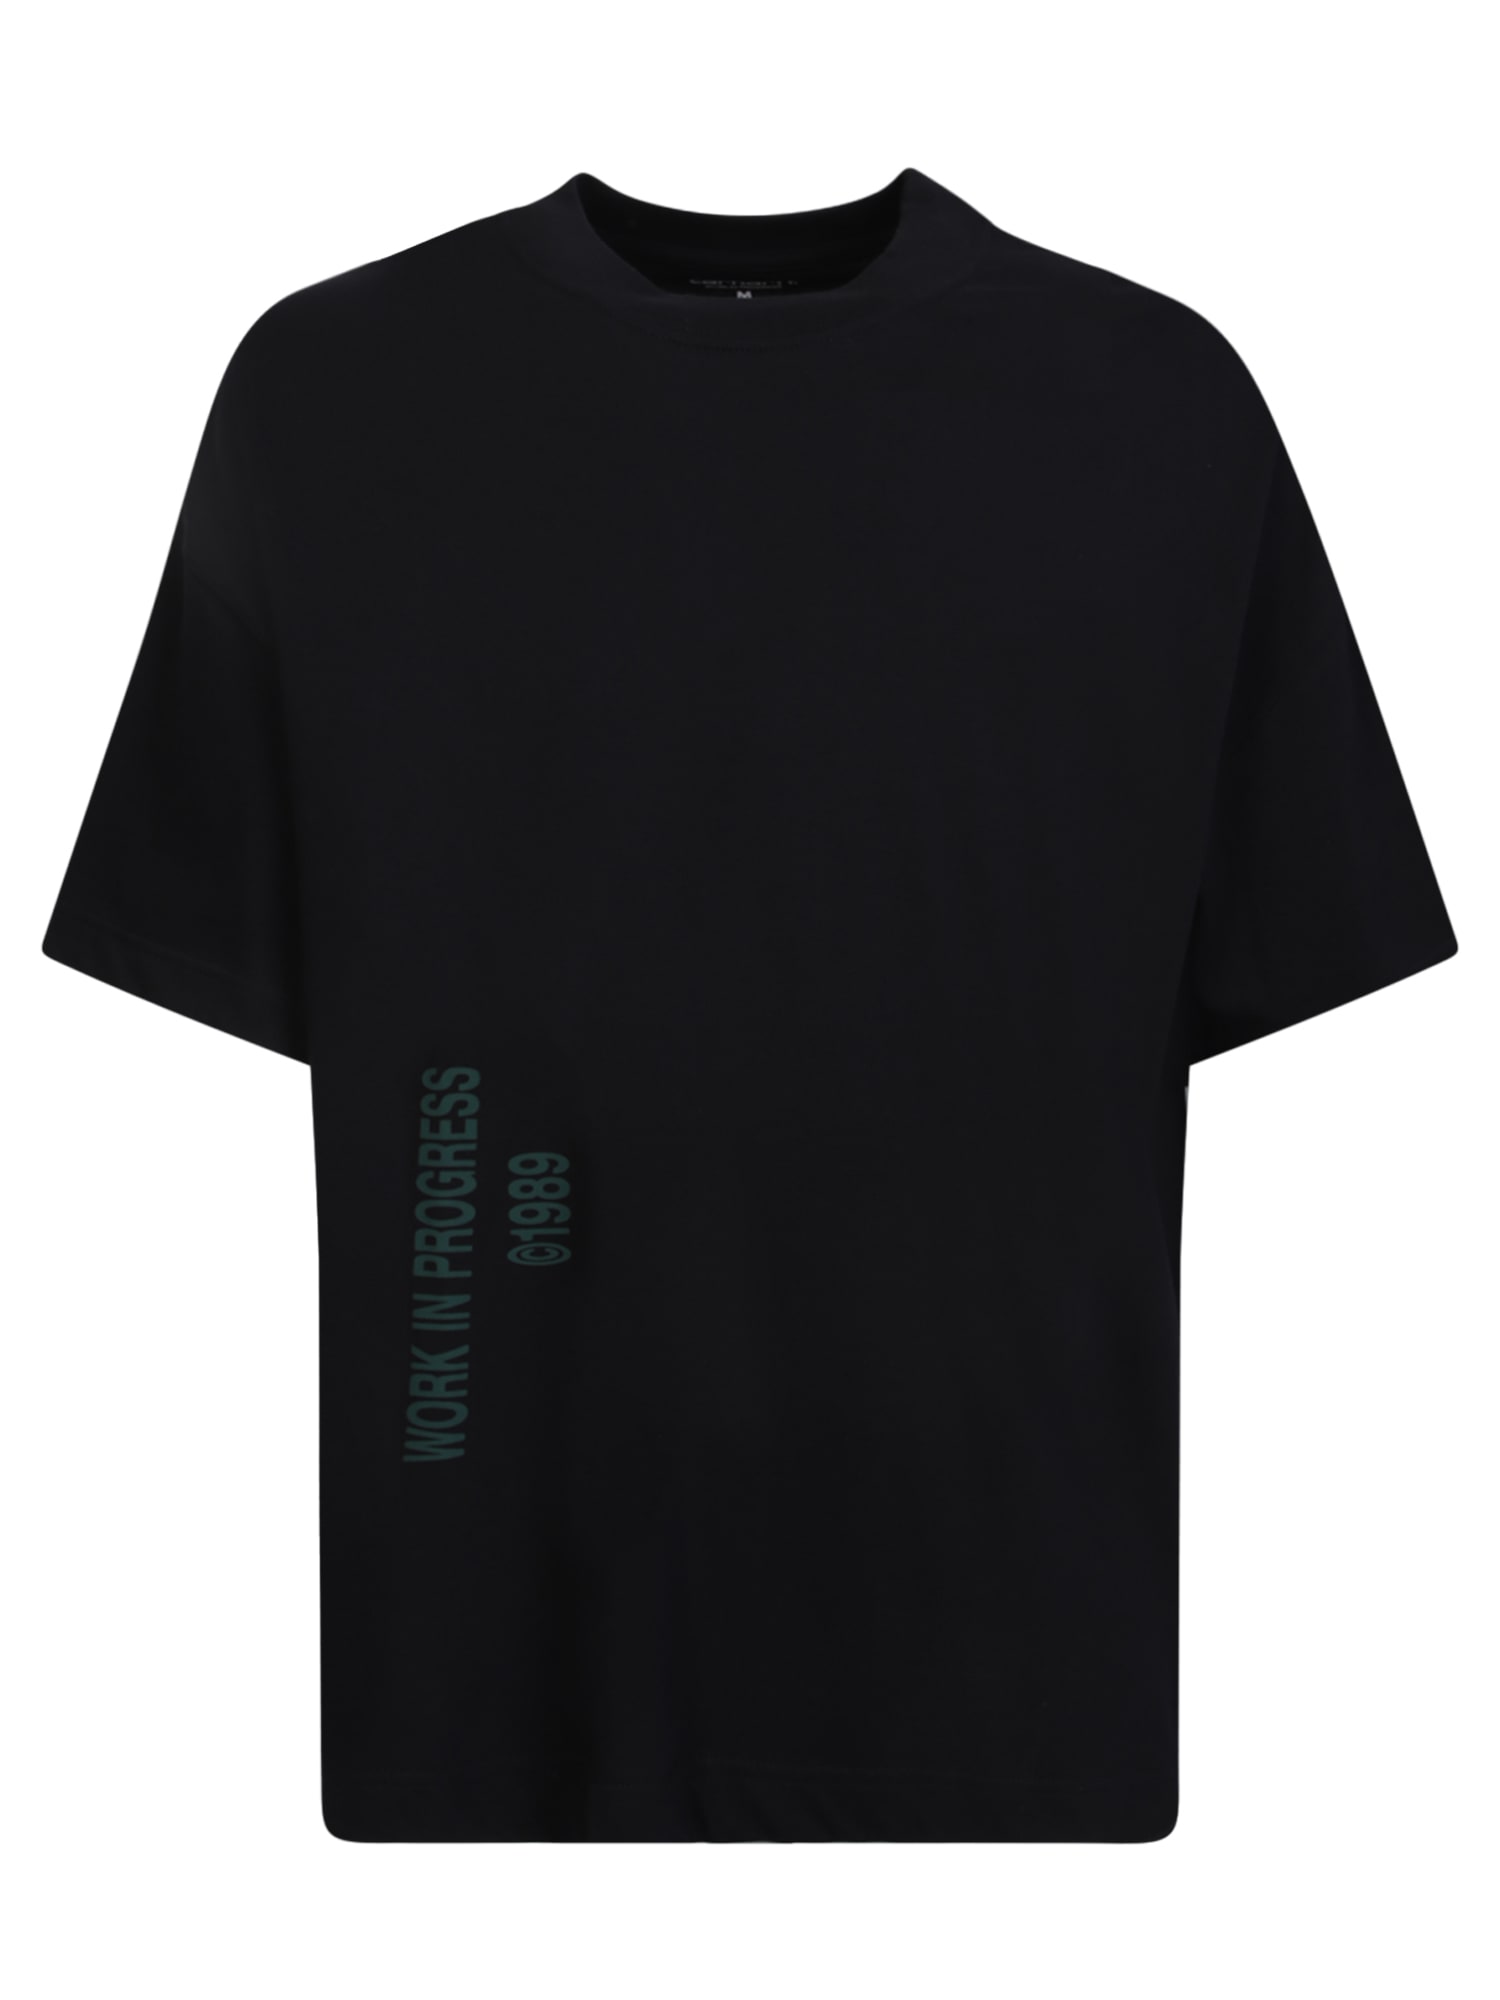 Shop Carhartt Black Signature T-shirt